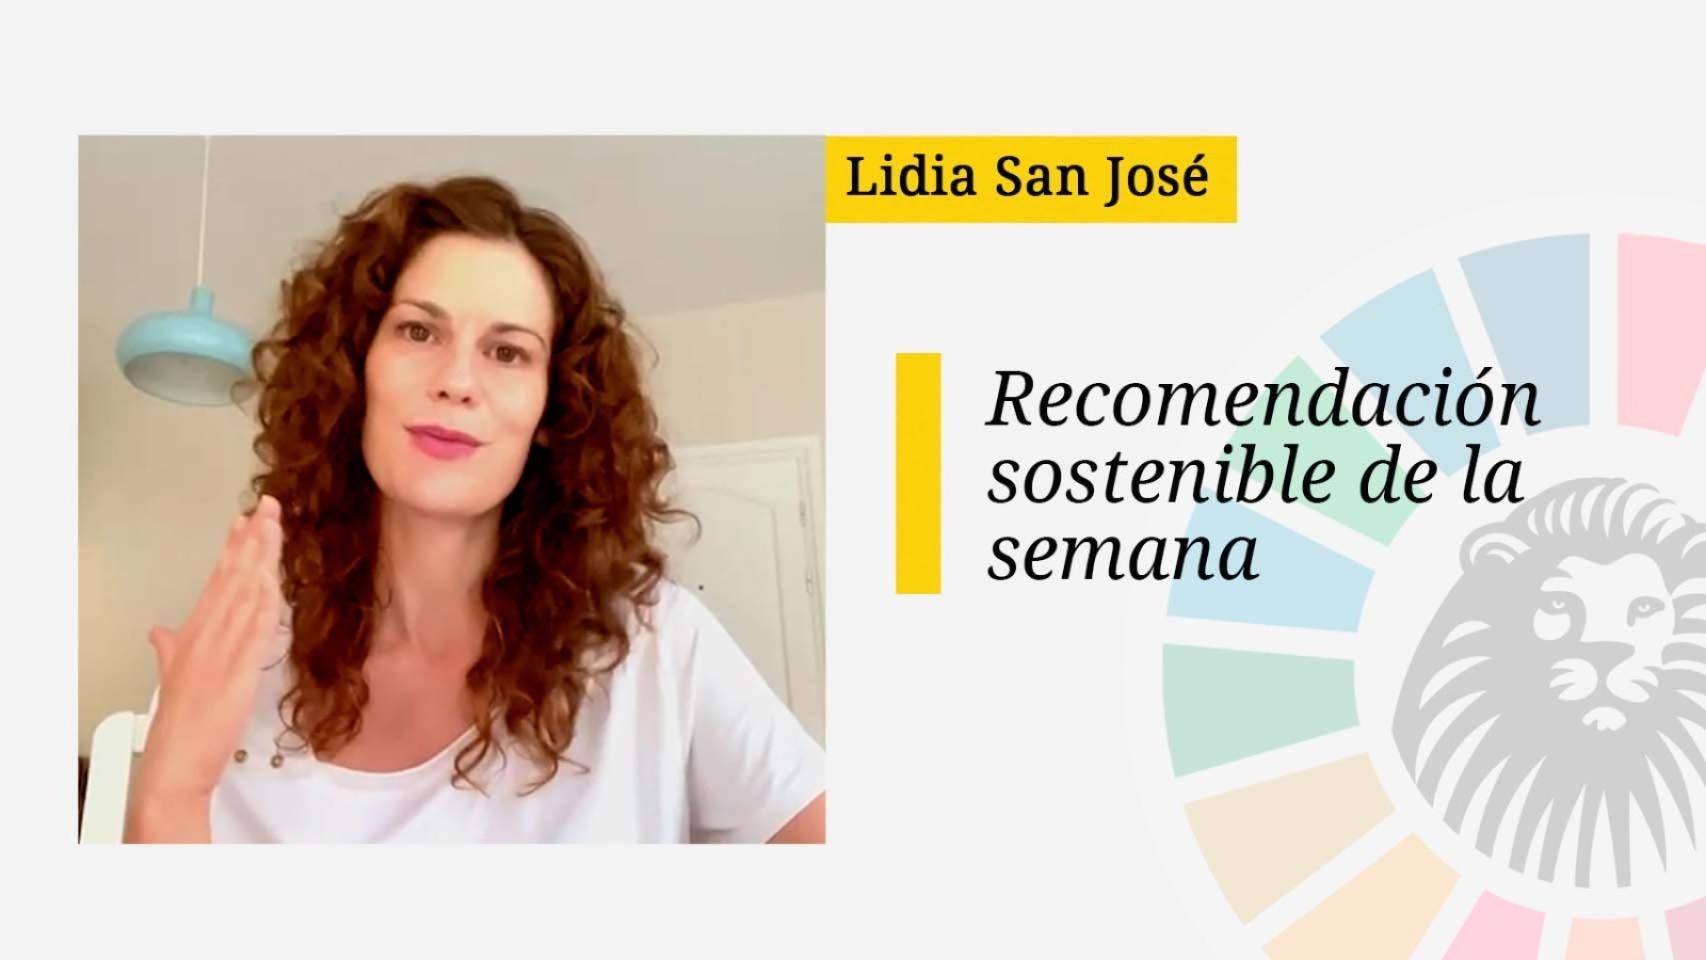 La recomendación de la semana de Lidia San José